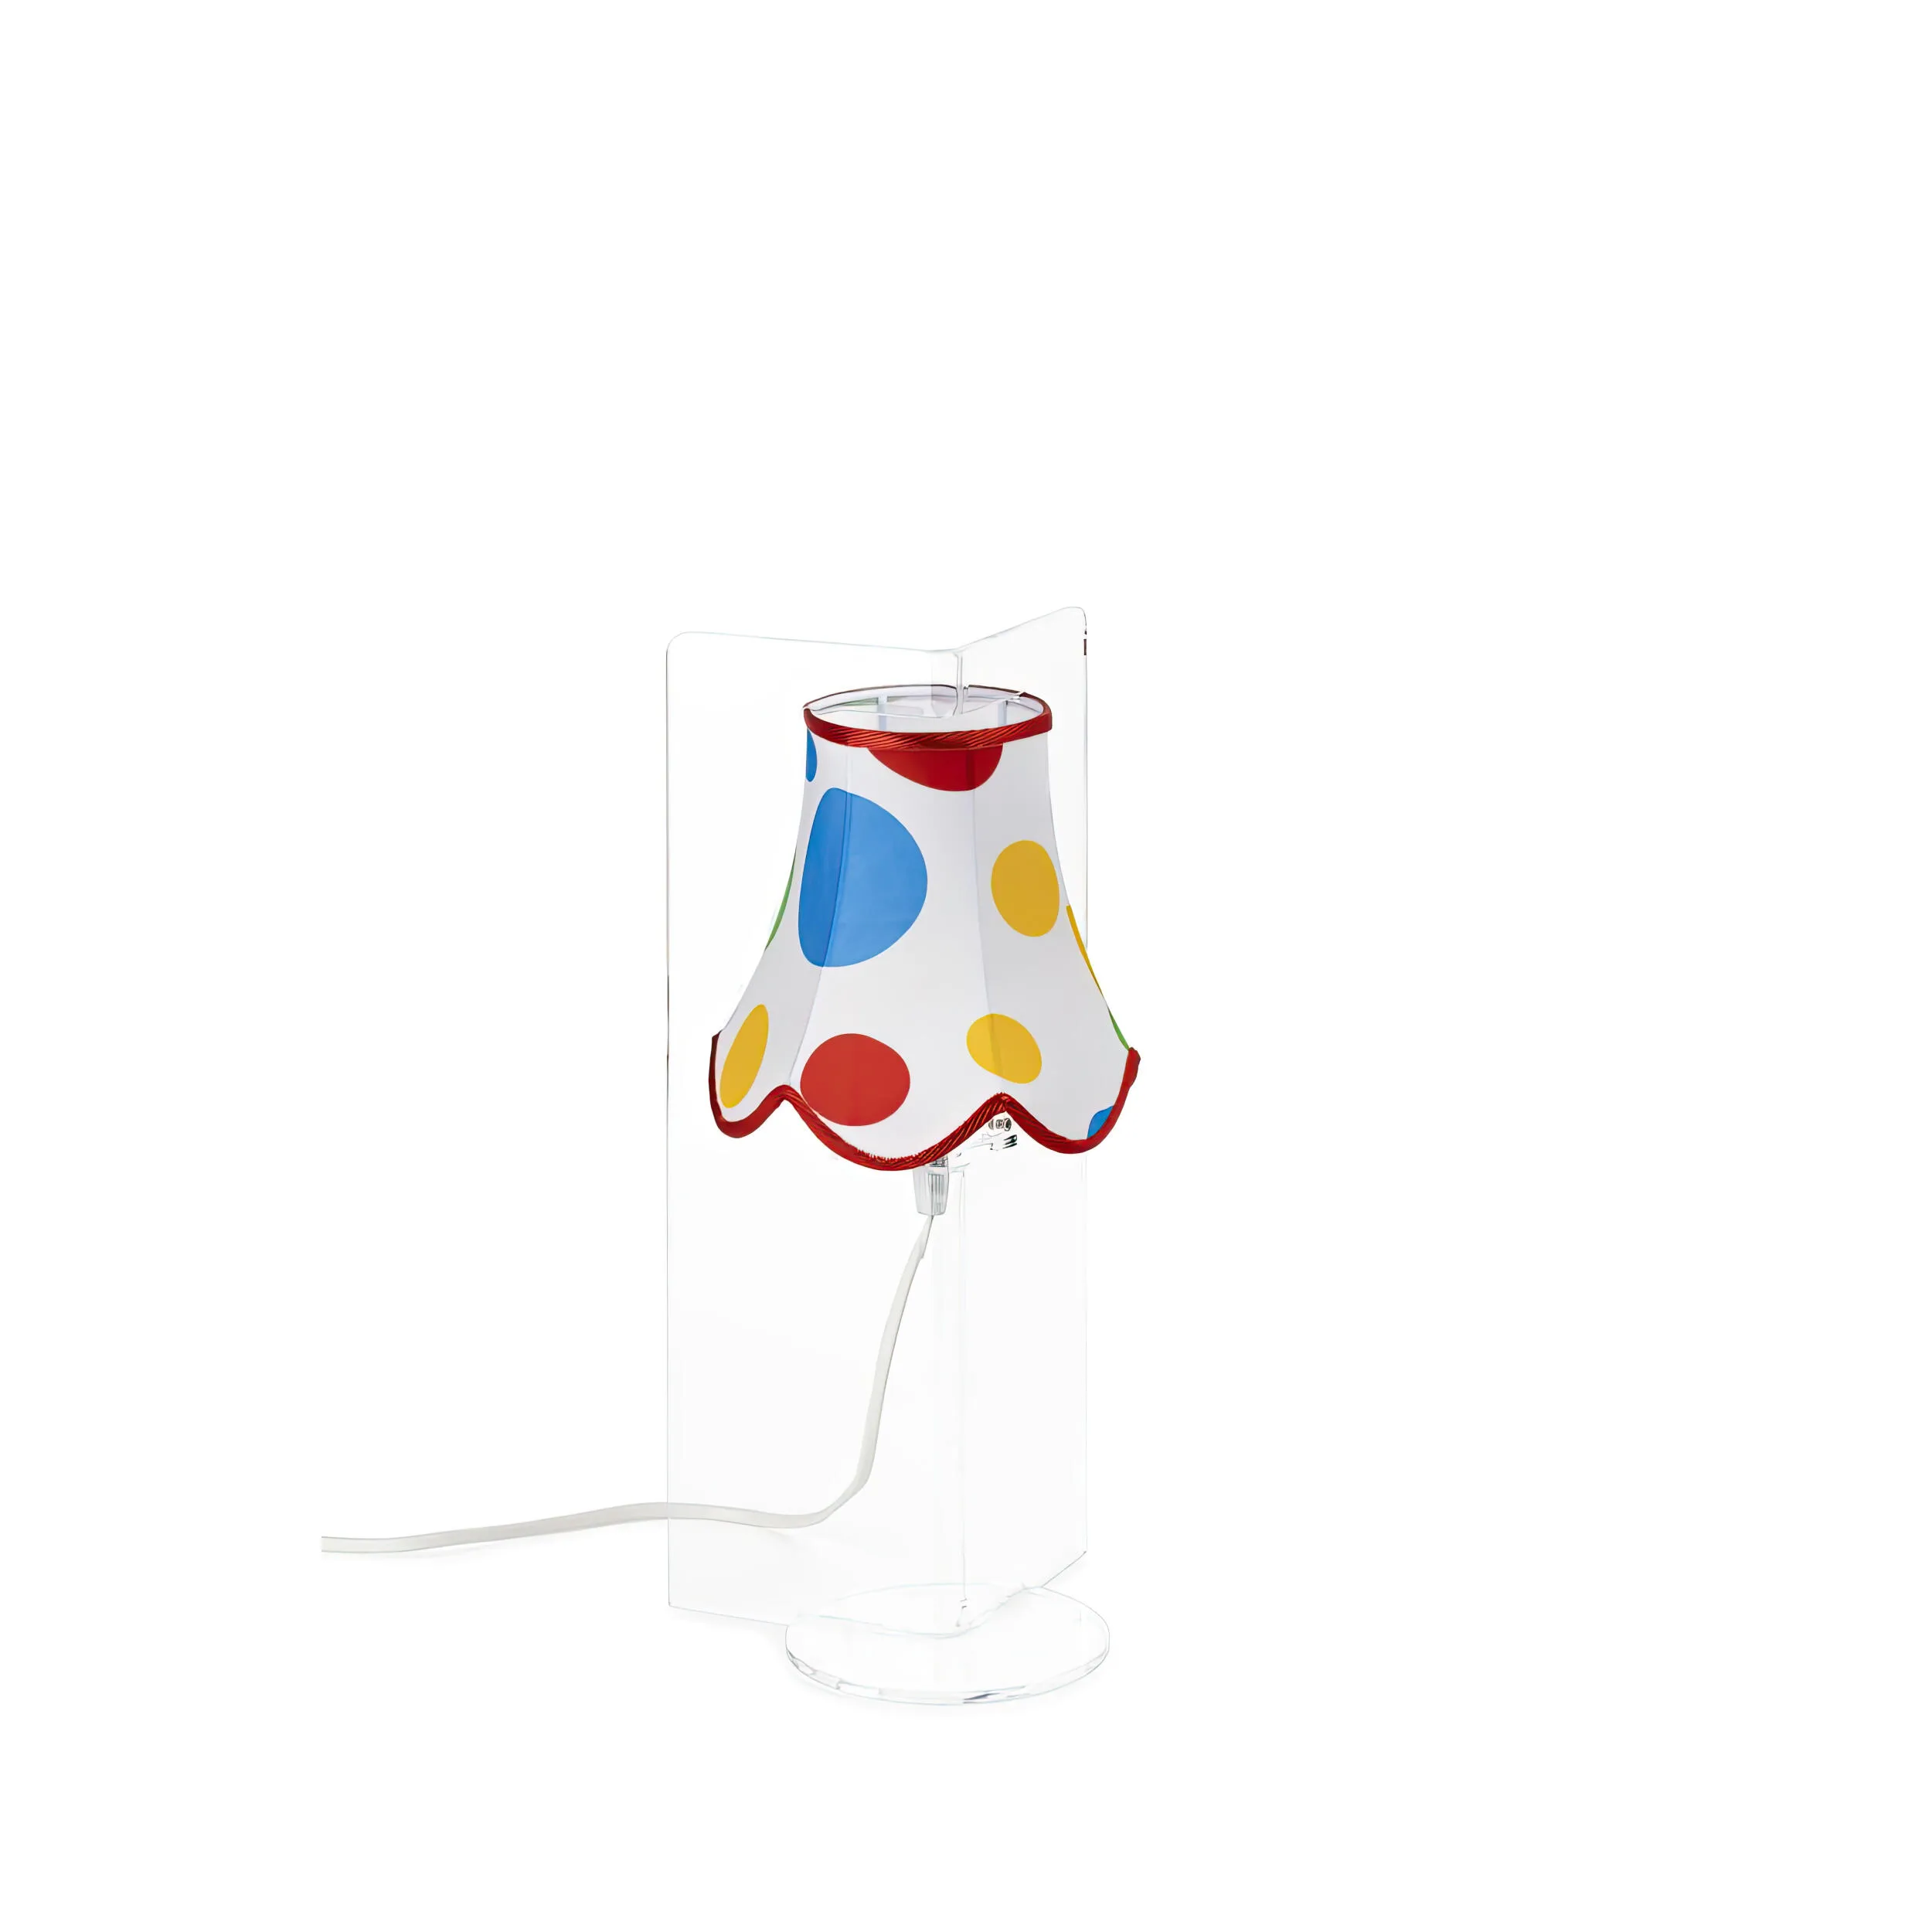 Abatjour Stella Bianco Pois Multicolor,design Walter Sbicca realizzato in Cristallo acrilico , cotone, misure 19x19x37 cm